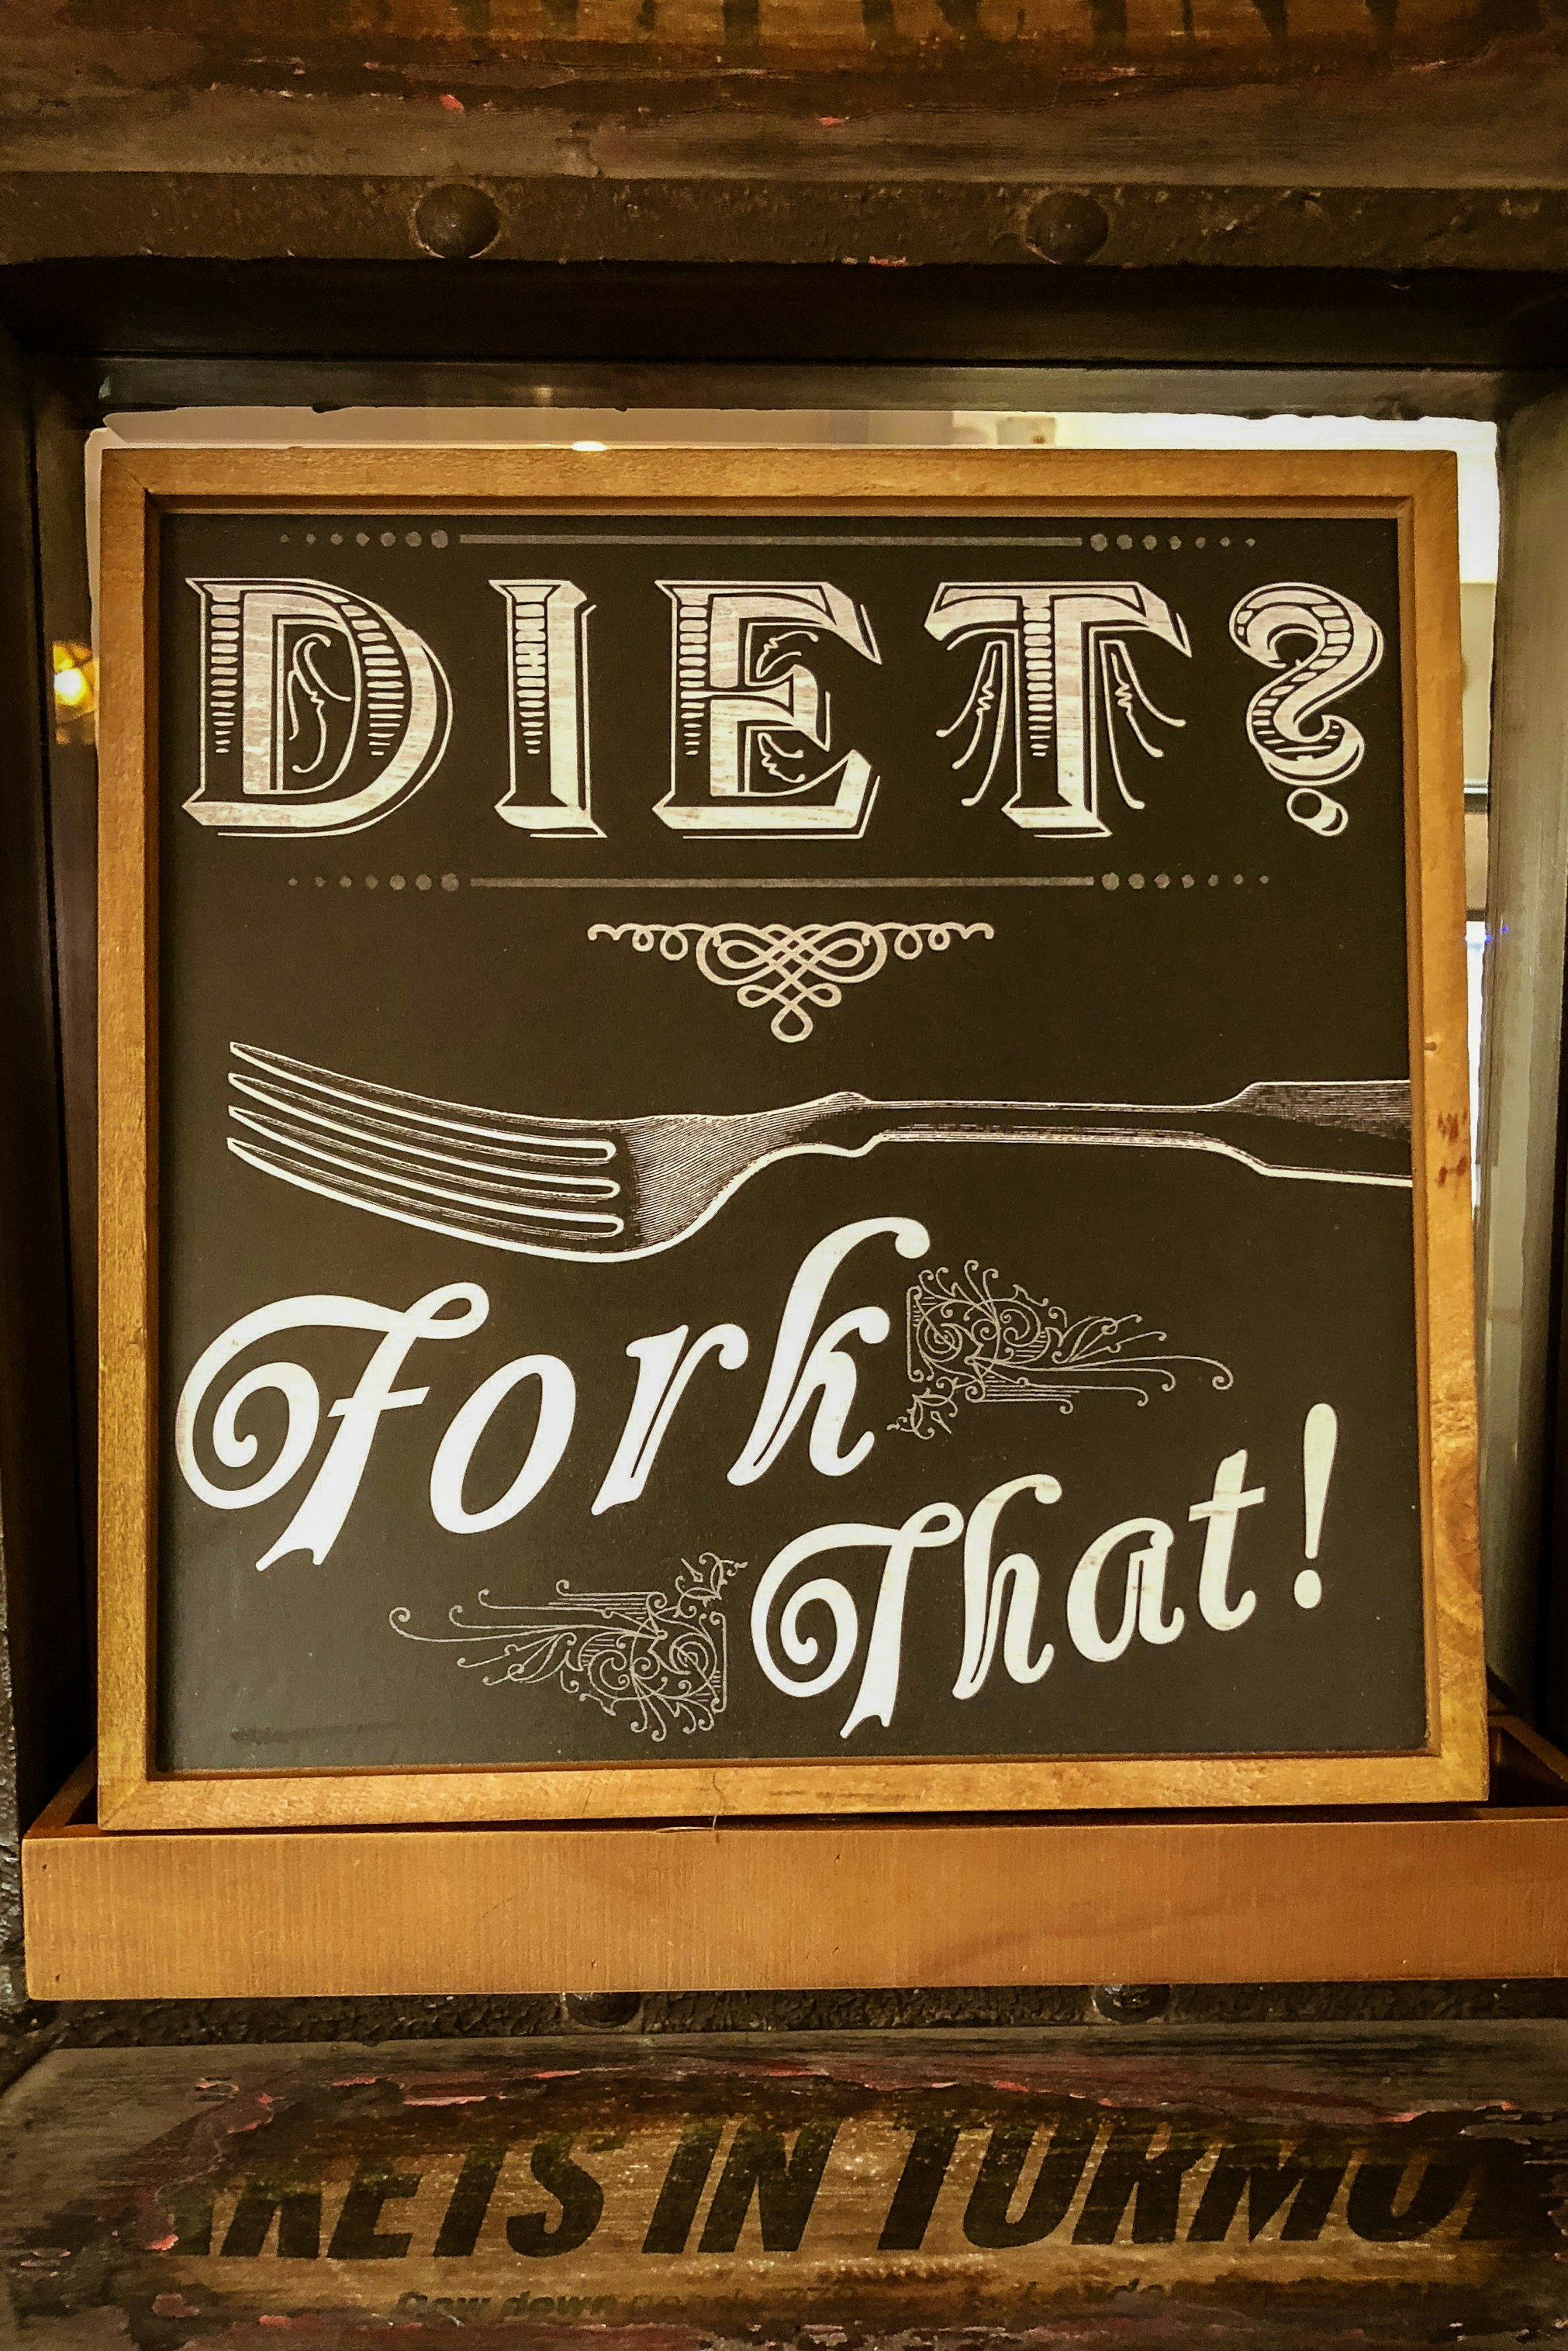 An amusing sign.  Diet, fork that.